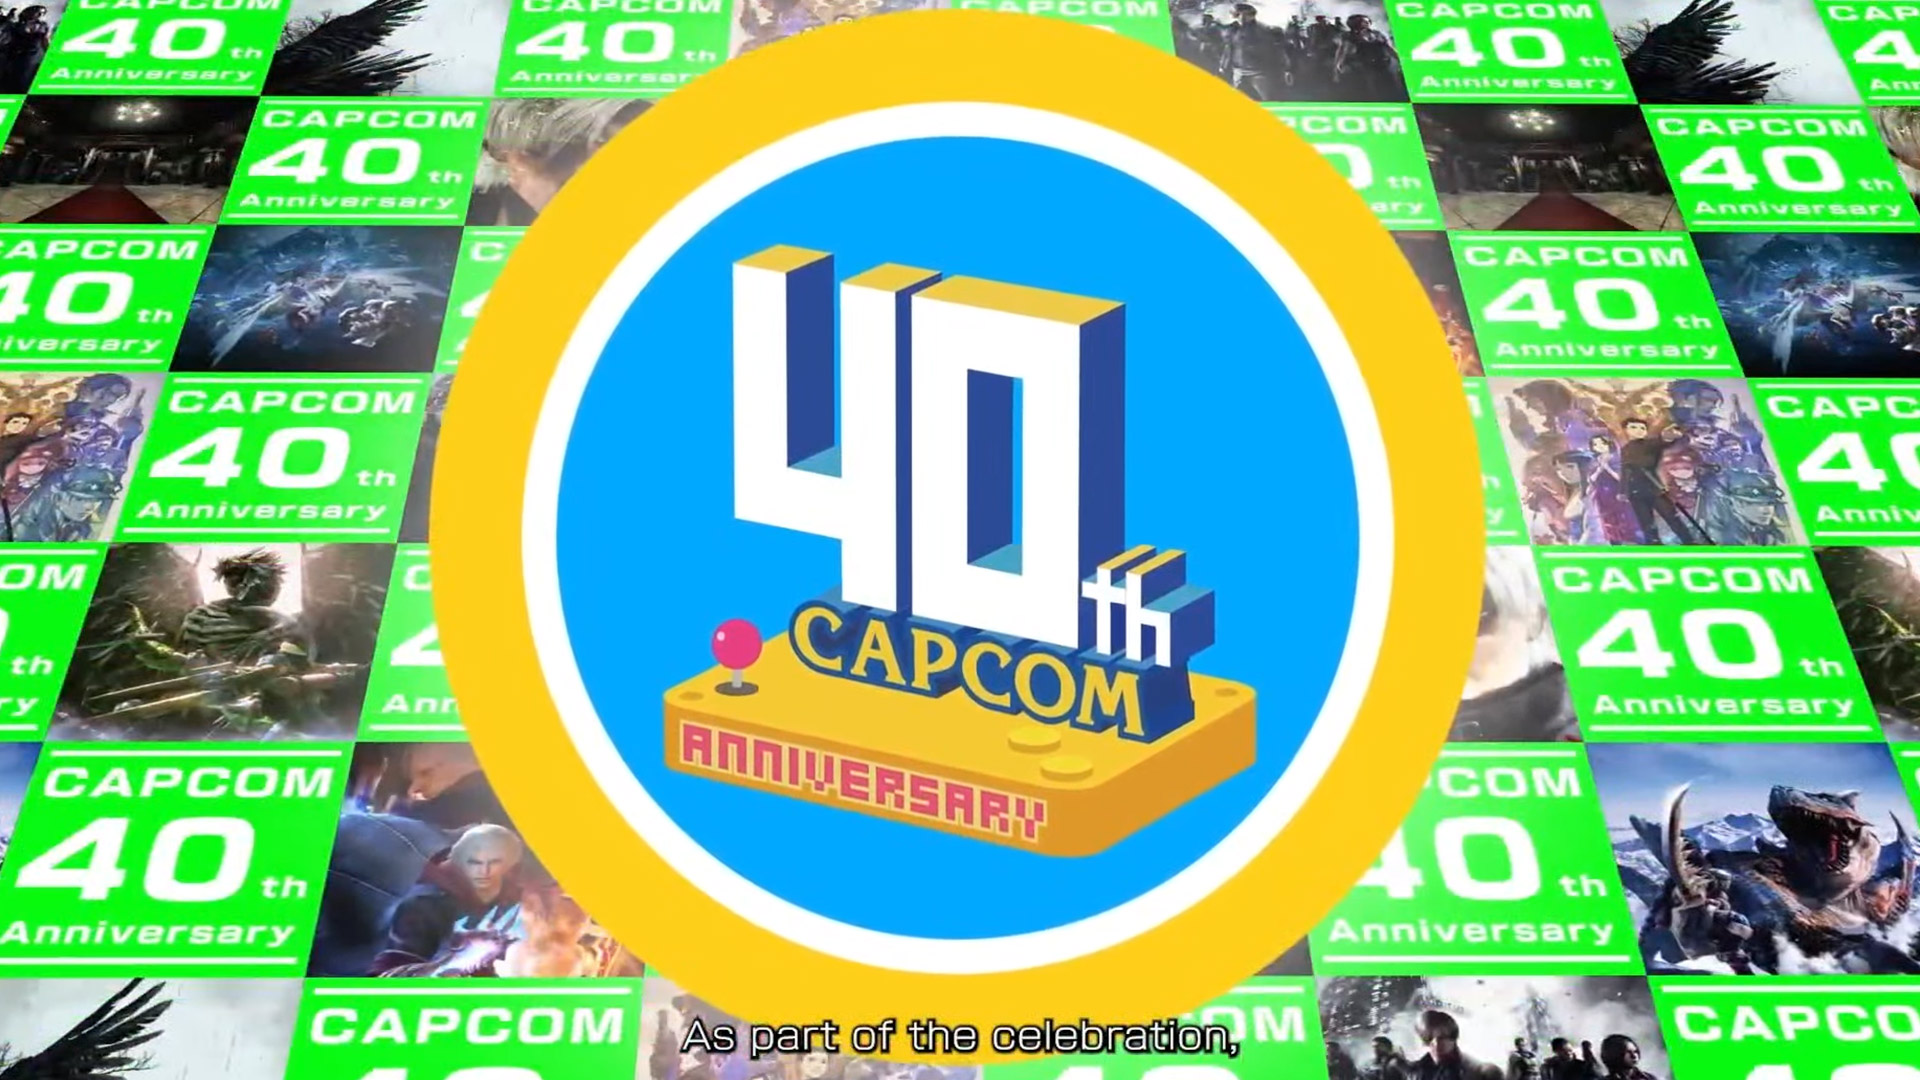 Capcom ma 40 lat! Aby uczcić to wydarzenie, uruchomił stronę internetową z muzeum i grami retro, w które można zagrać